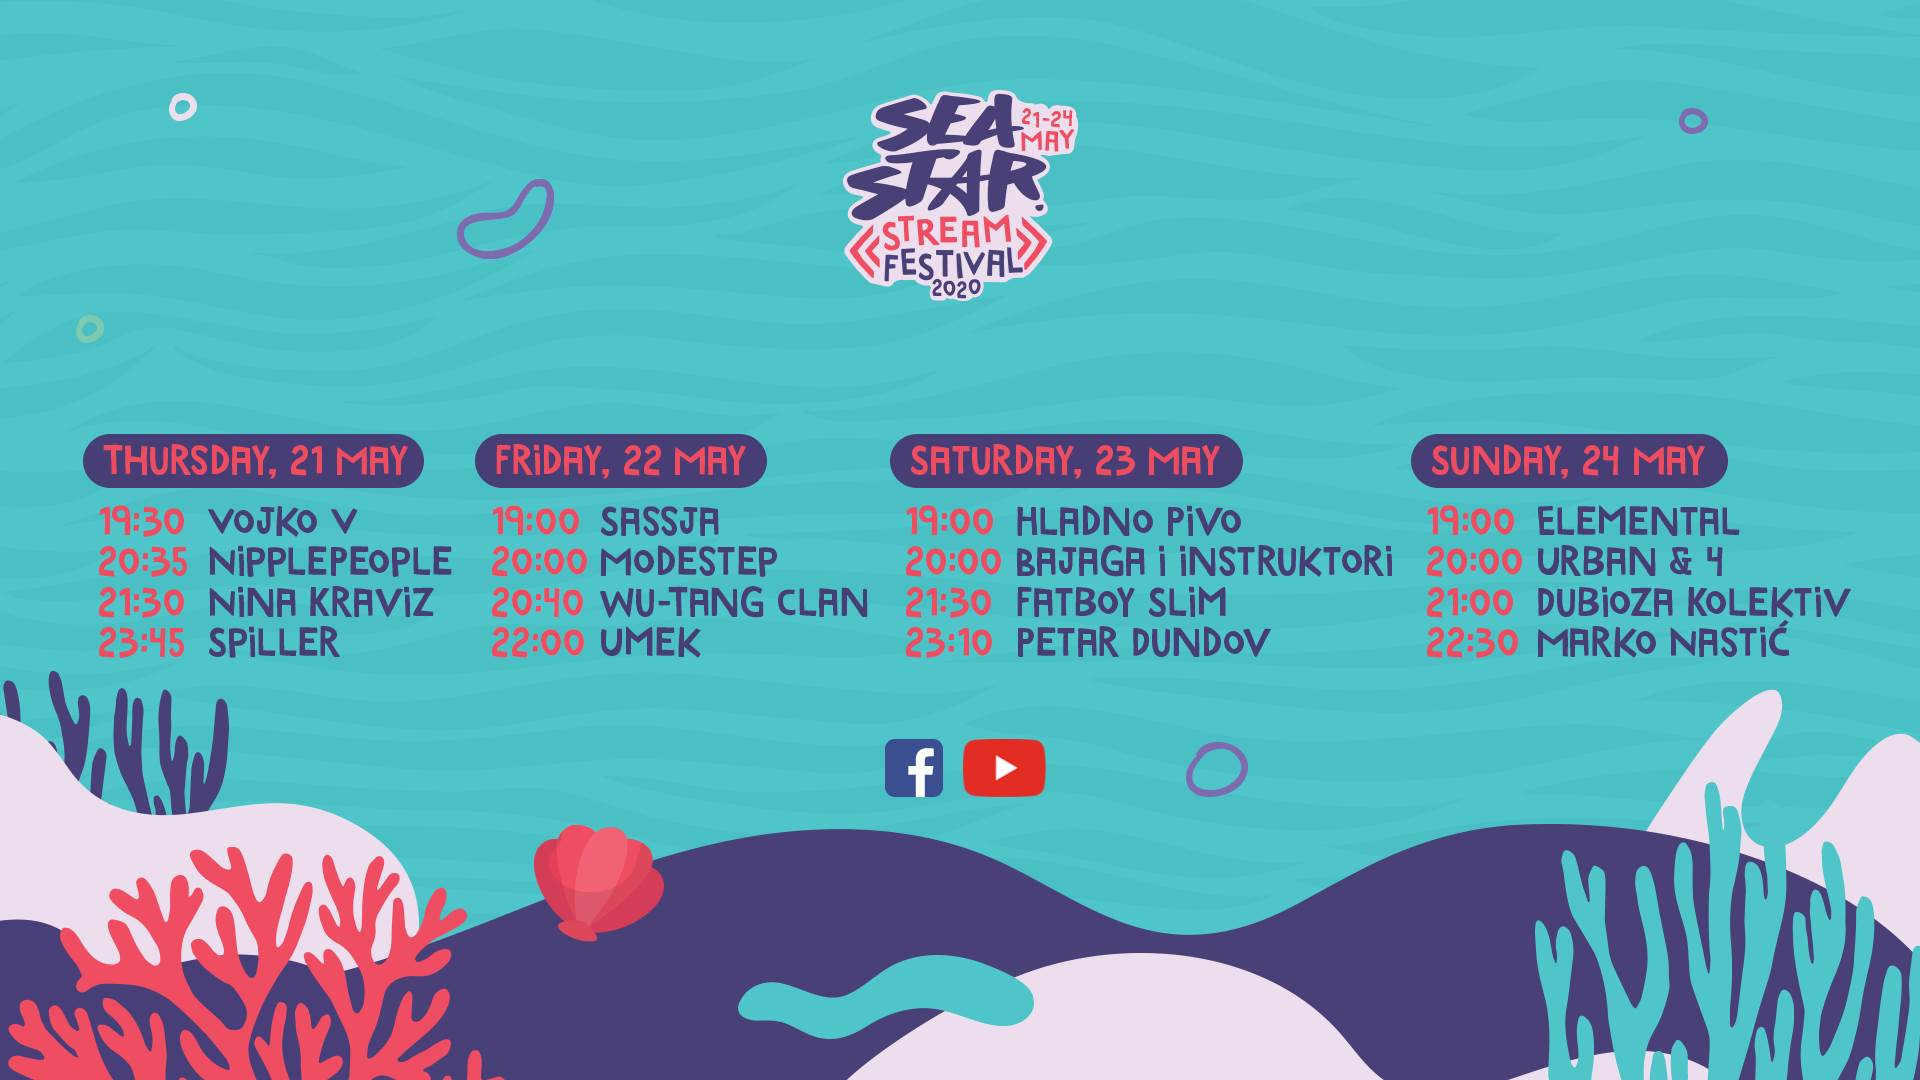  Sea Star – prvi regionalni “striming” festival 